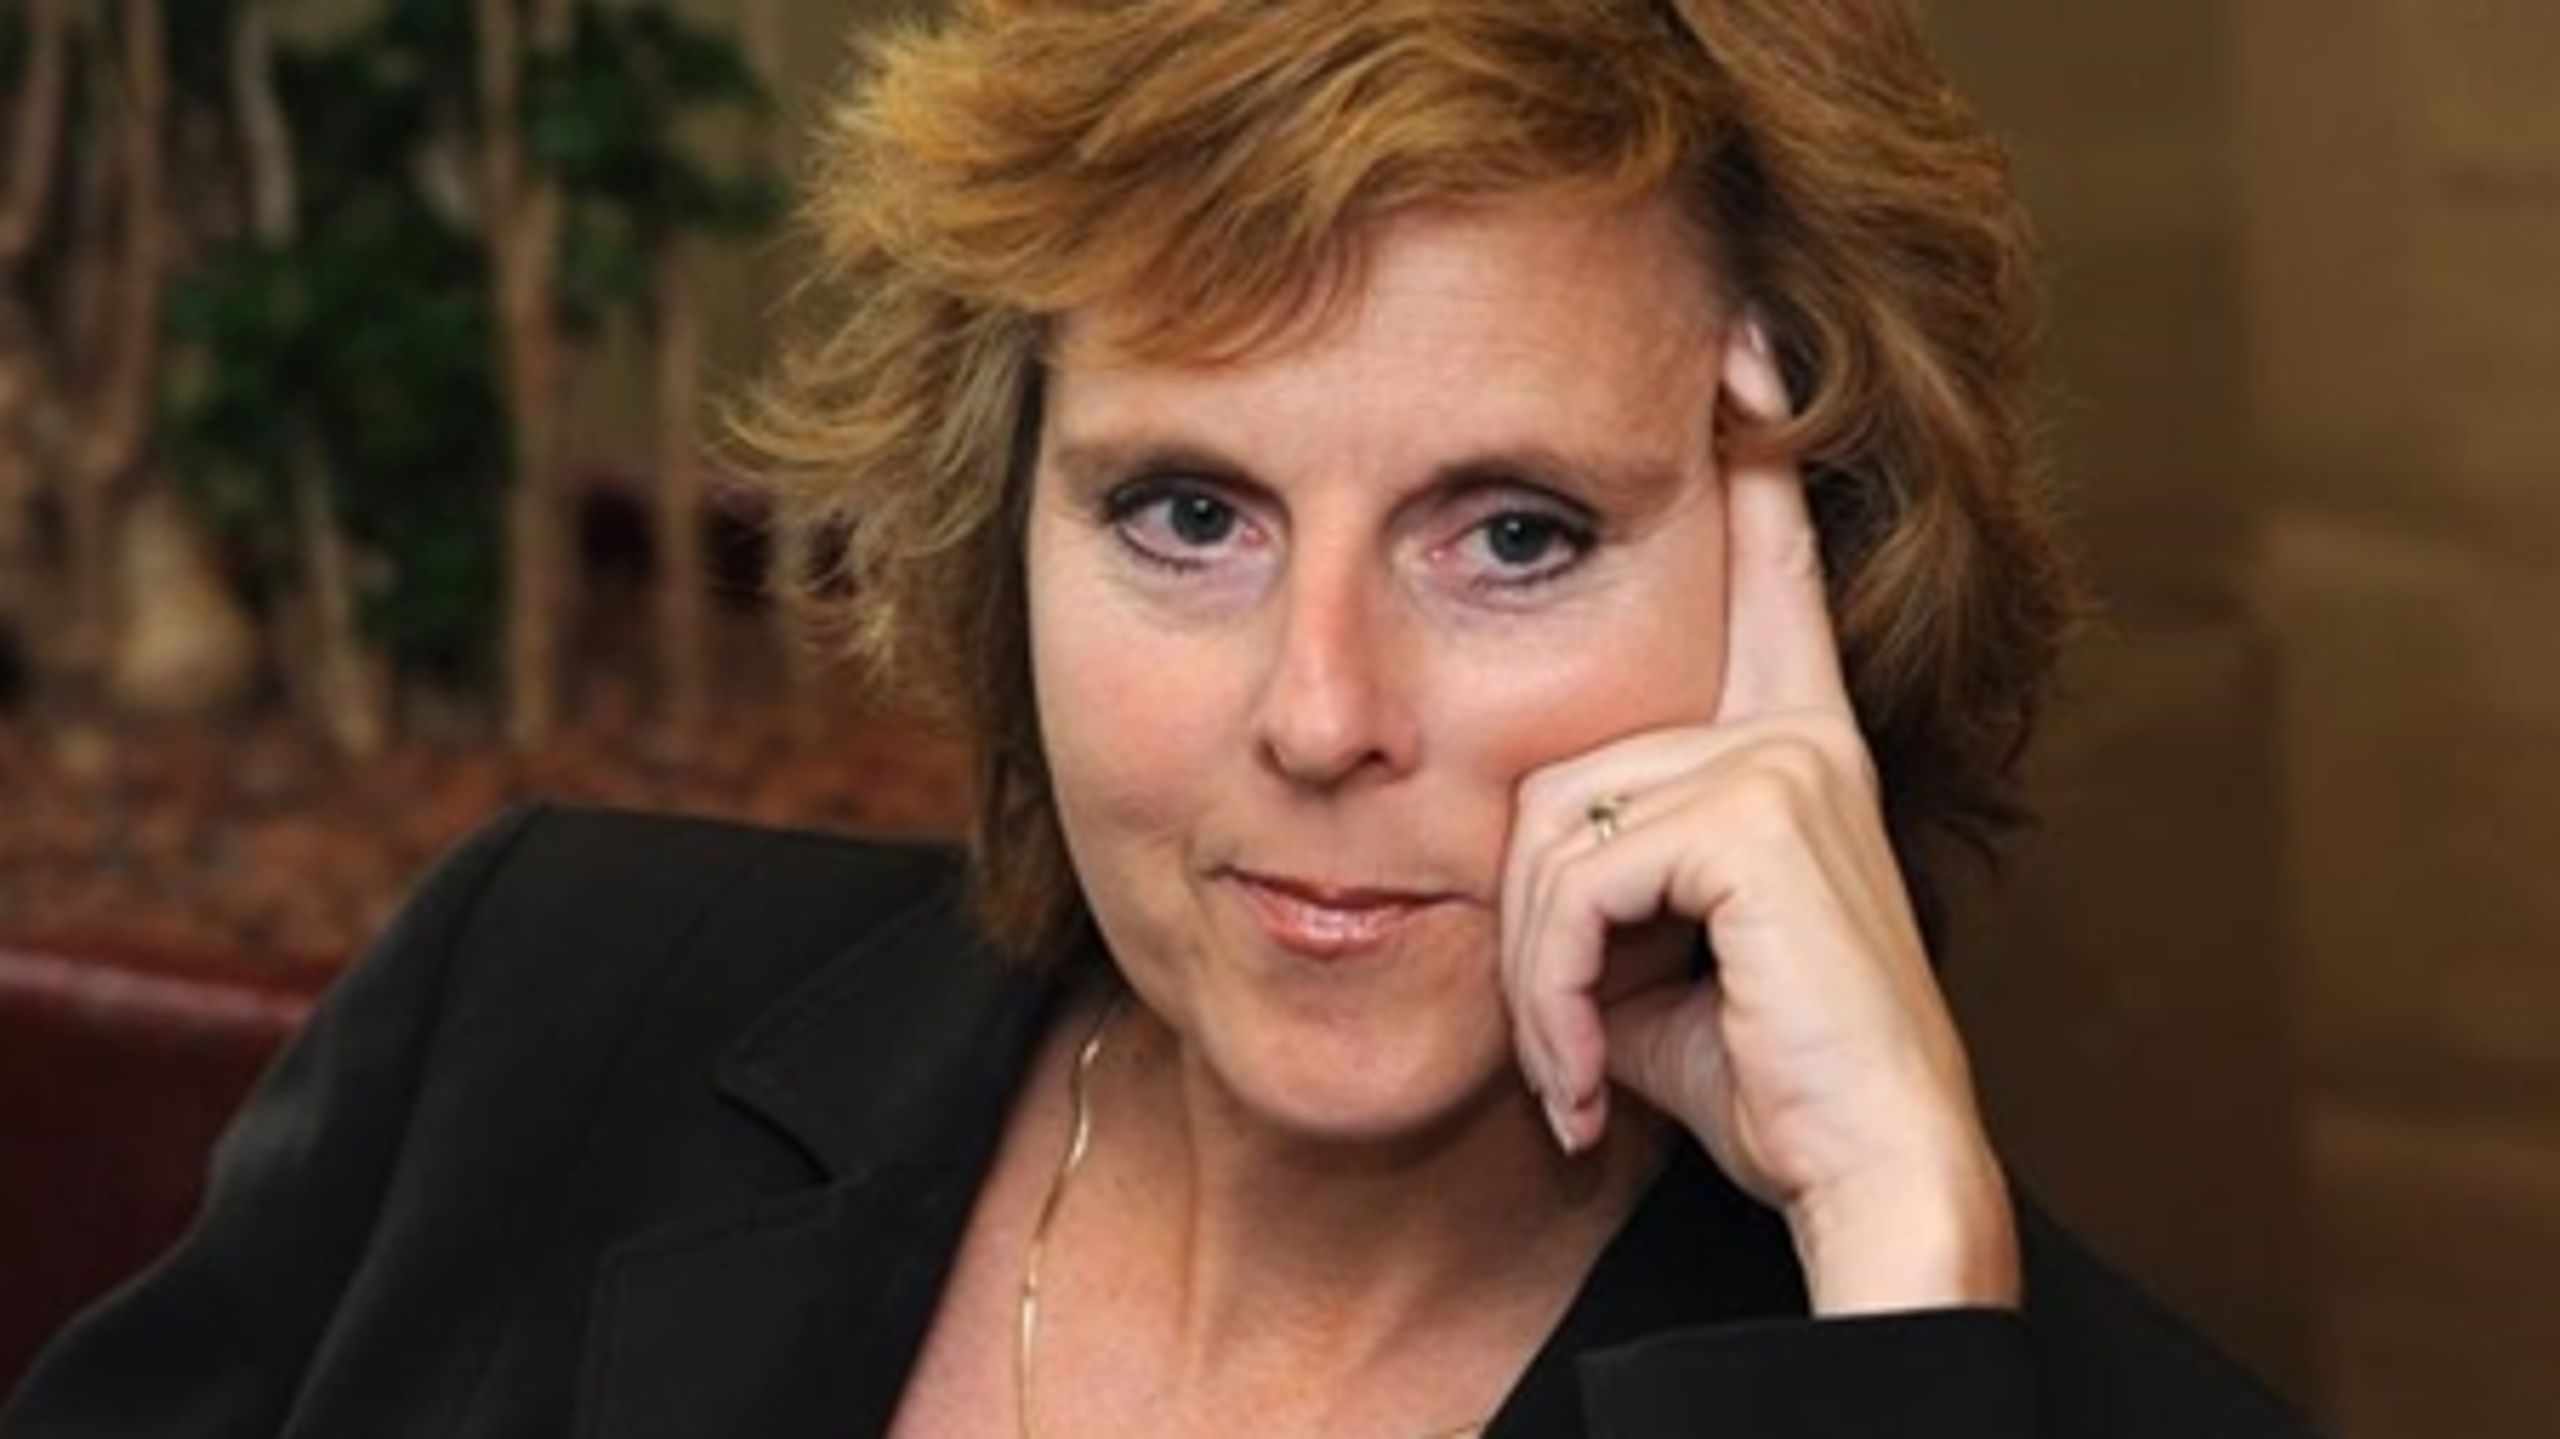 EU's klimakommissær Connie Hedegaard oplever, at der er fremskridt omkring klimafinansieringen bag kulisserne.